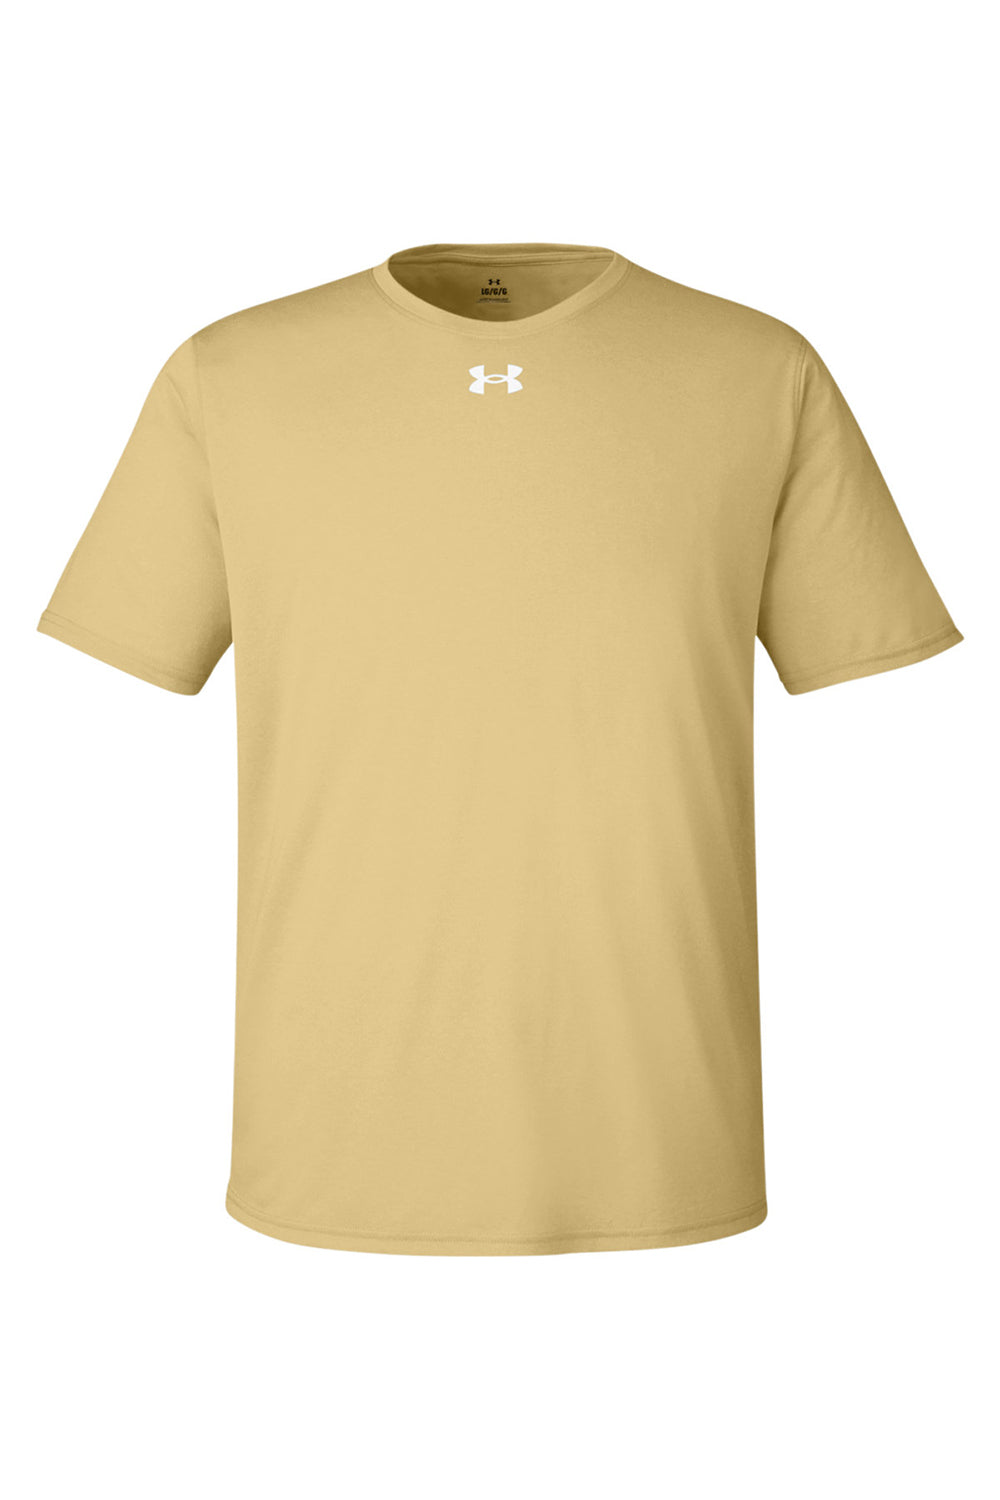 Under Armour 1376842 Mens Team Tech Moisture Wicking Short Sleeve Crewneck T-Shirt Vegas Gold Flat Front